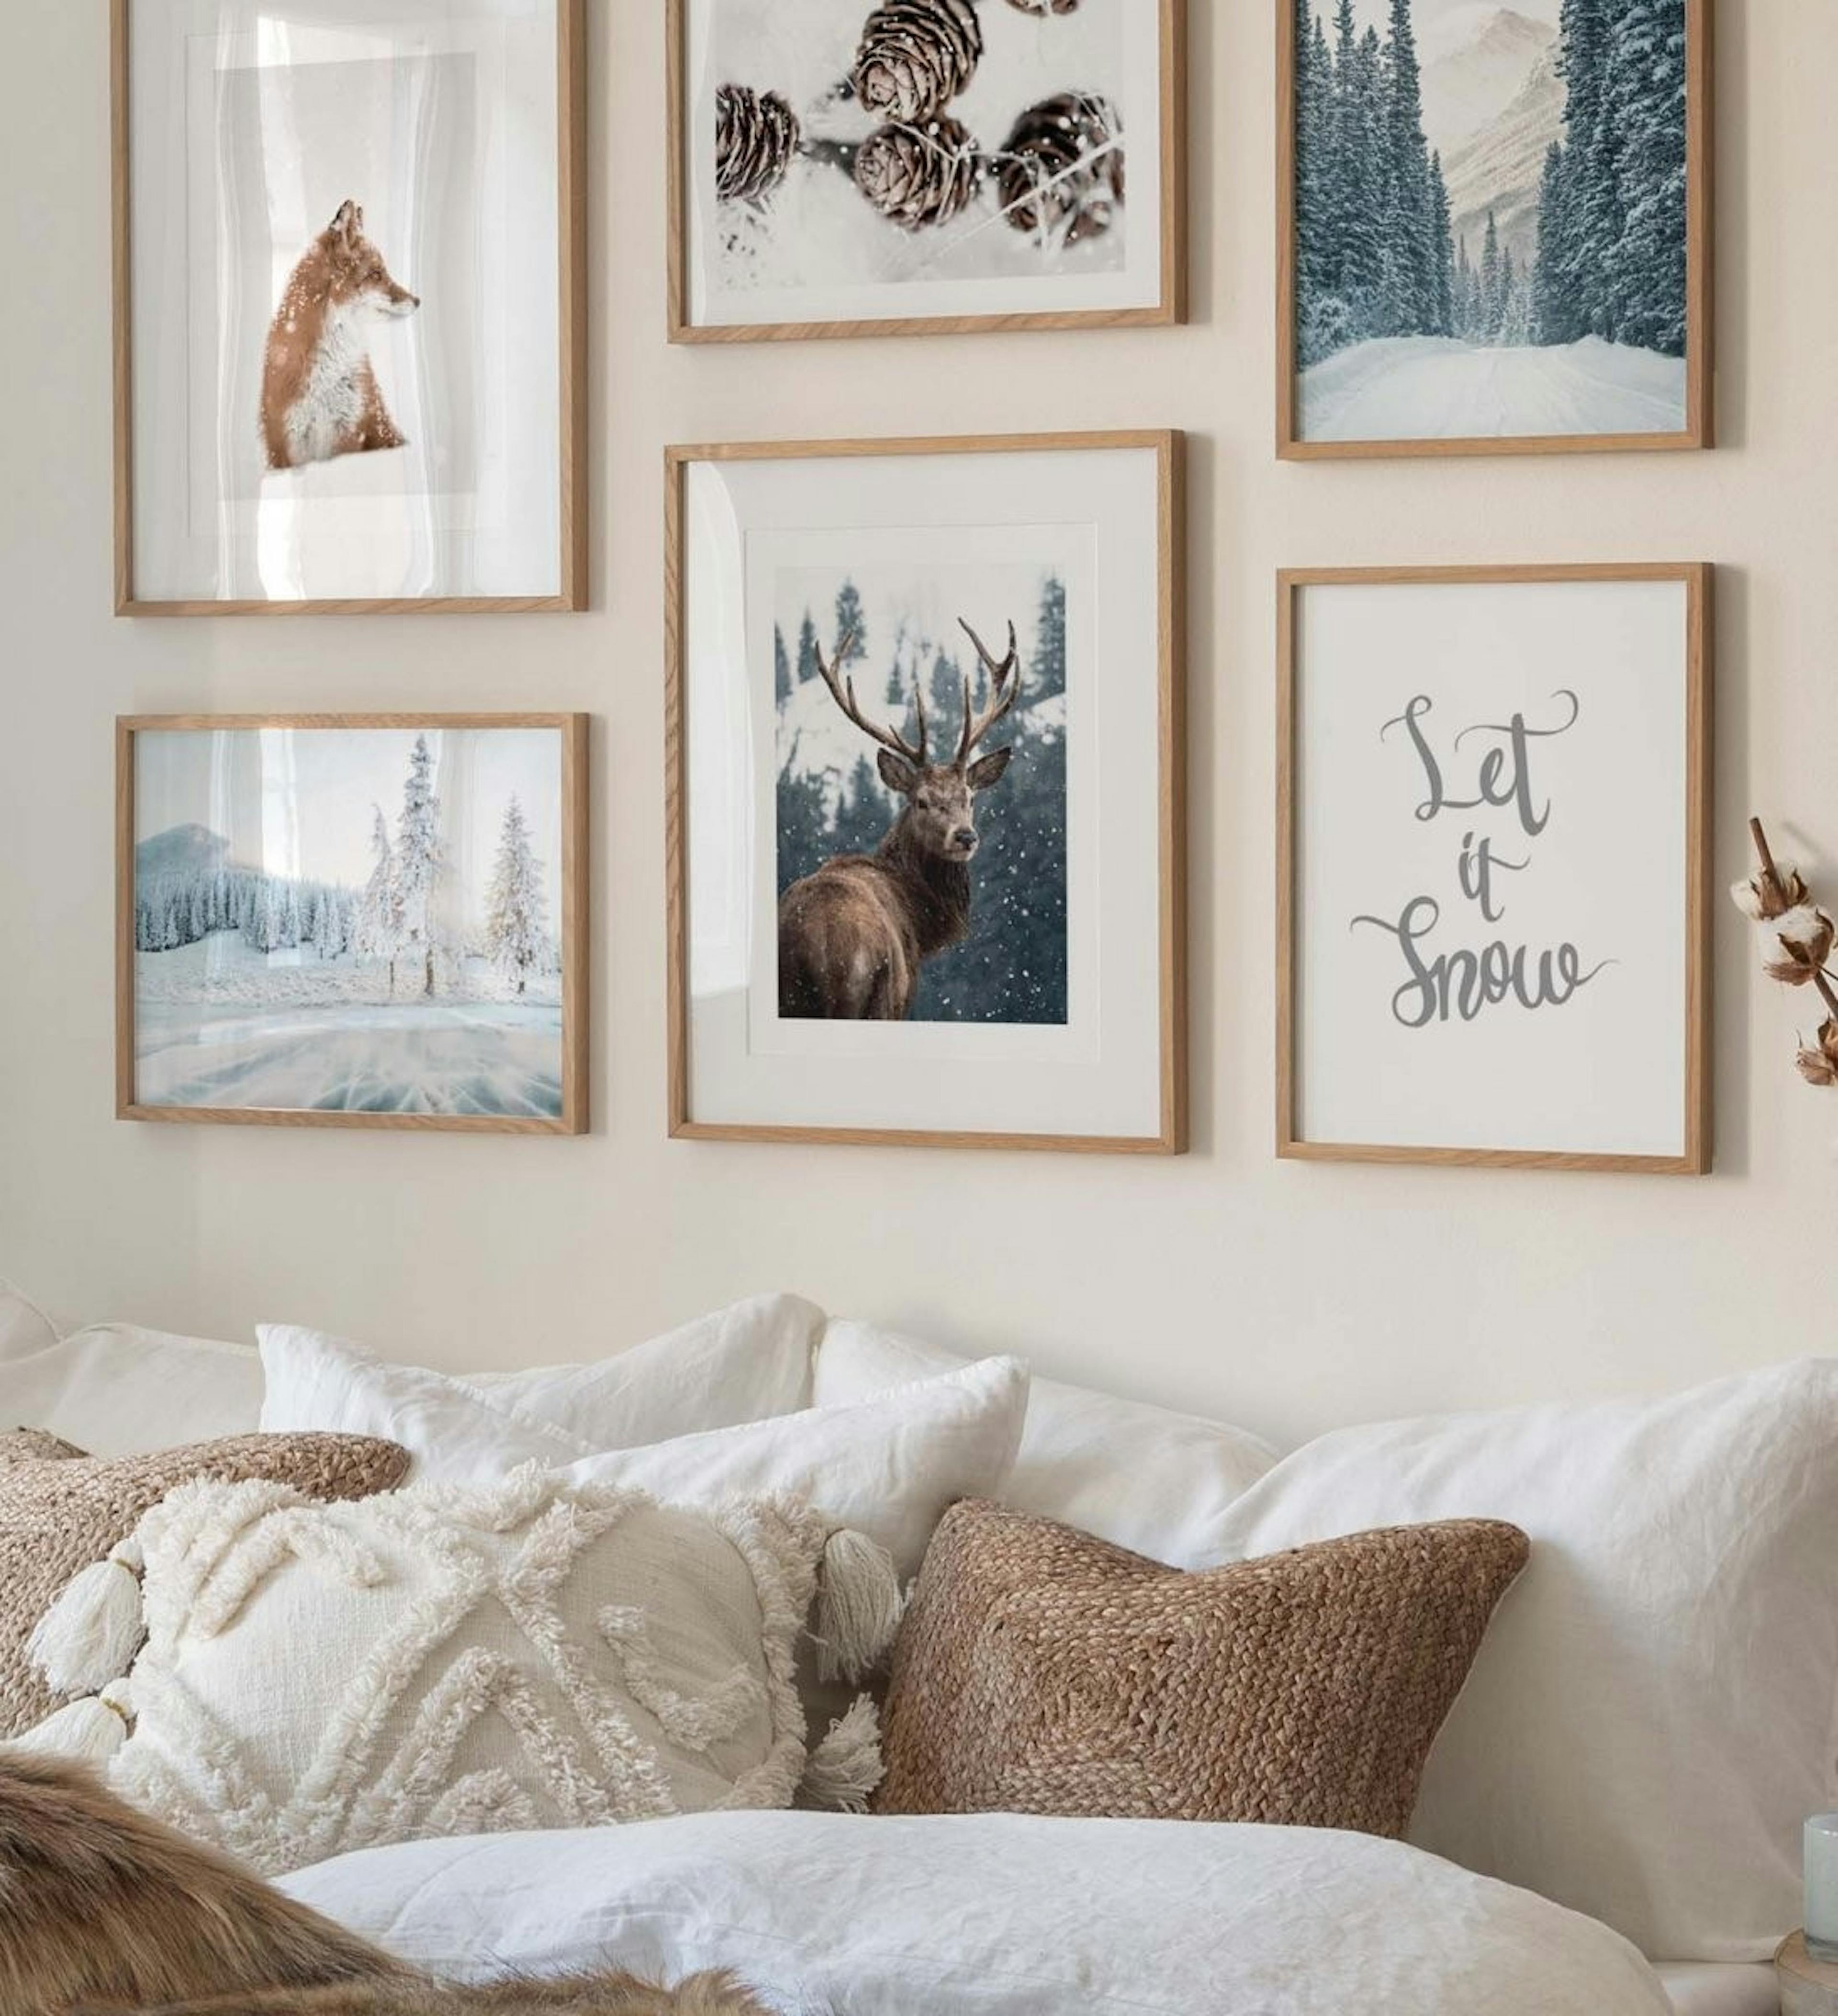 콘, 여우, 붉은 사슴의 겨울 포스터가 있는 갤러리 벽은 자연 겨울 사진과 침실용 오크 프레임이 있는 인용문과 결합됩니다.